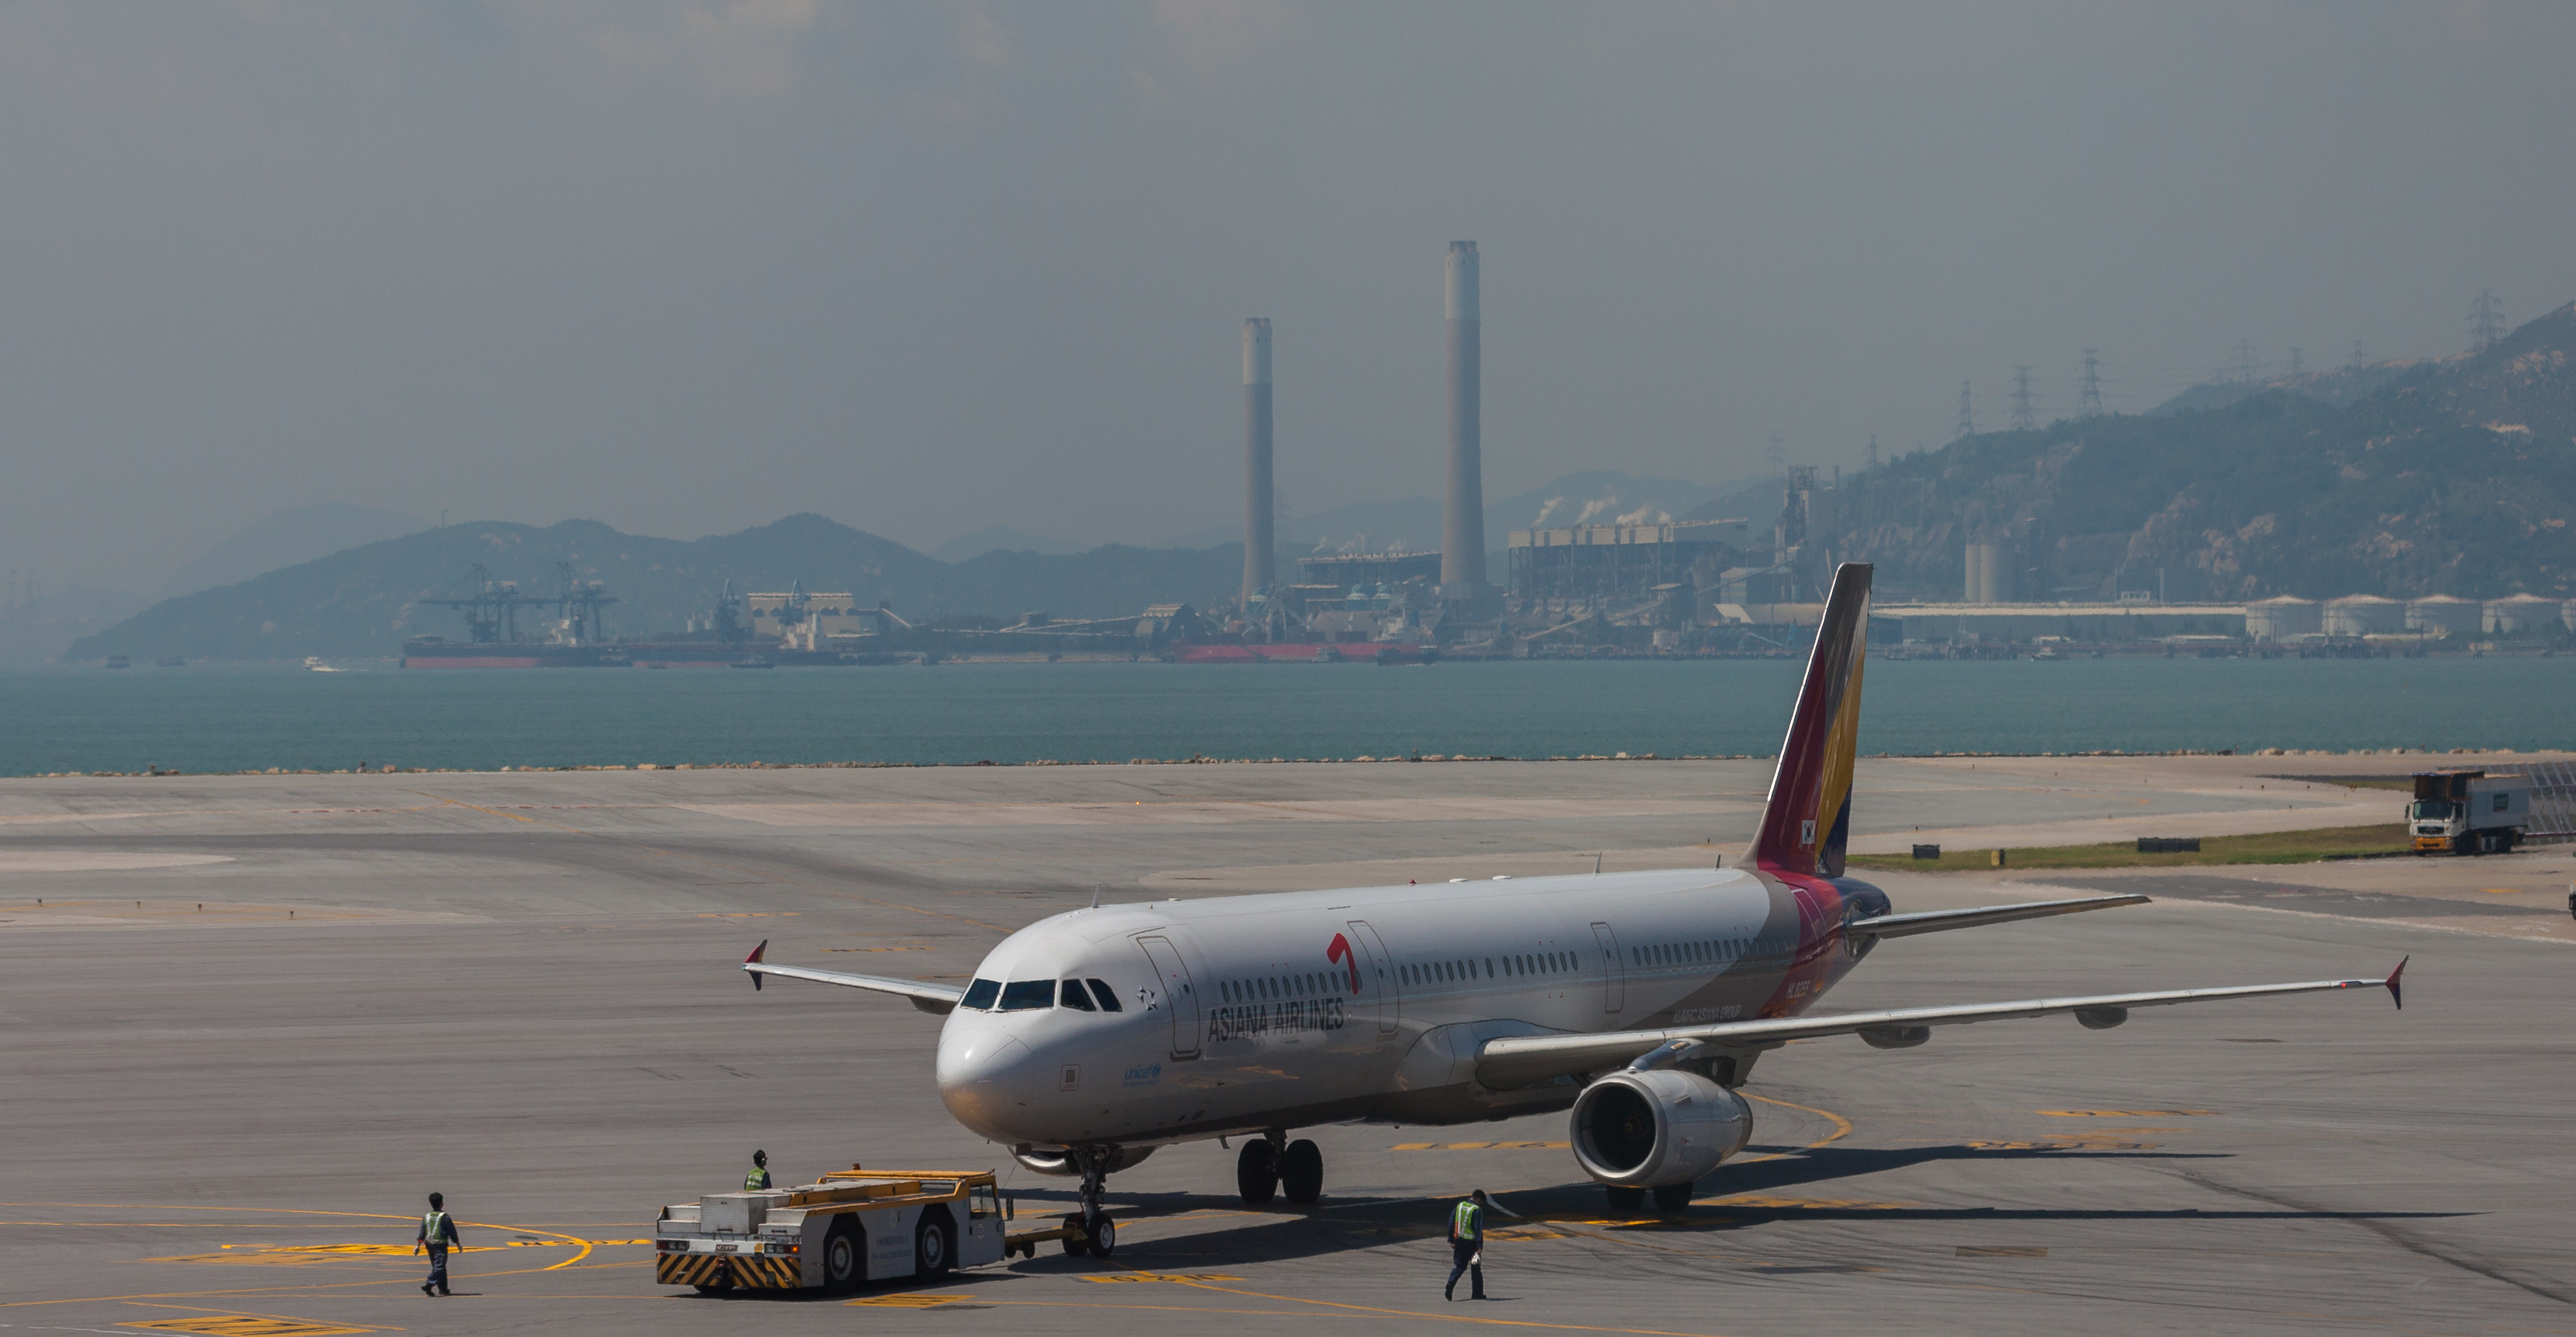 Aeropuerto de Hong Kong, 2013-08-13, DD 17